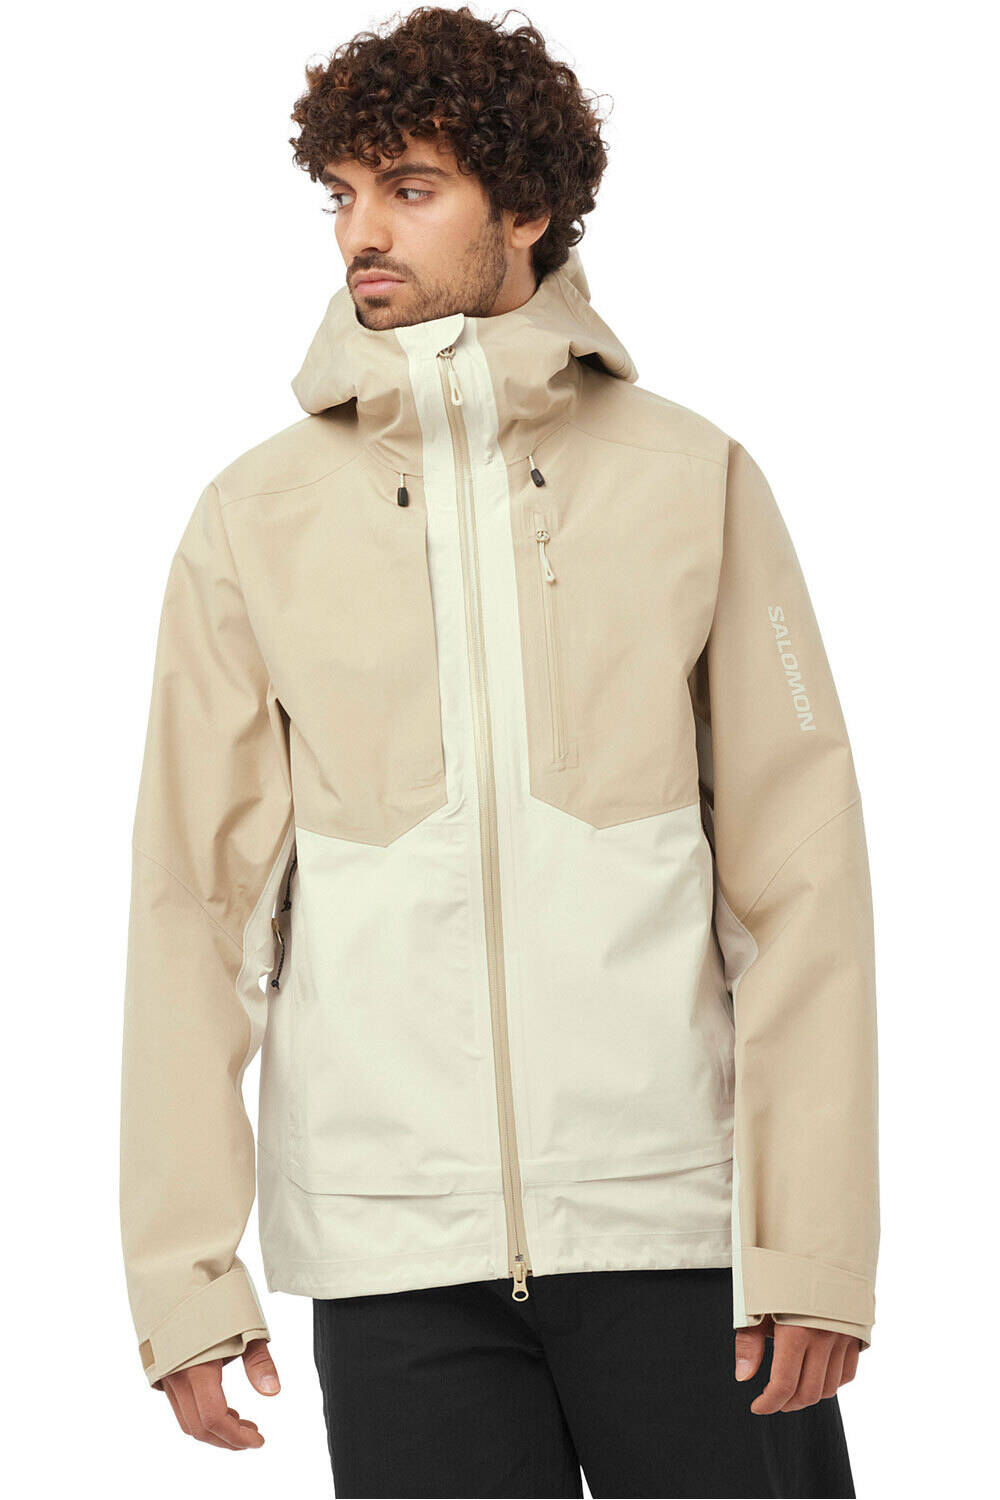 Salomon chaqueta impermeable hombre OUTLINE 3L GTX SHELL M vista frontal